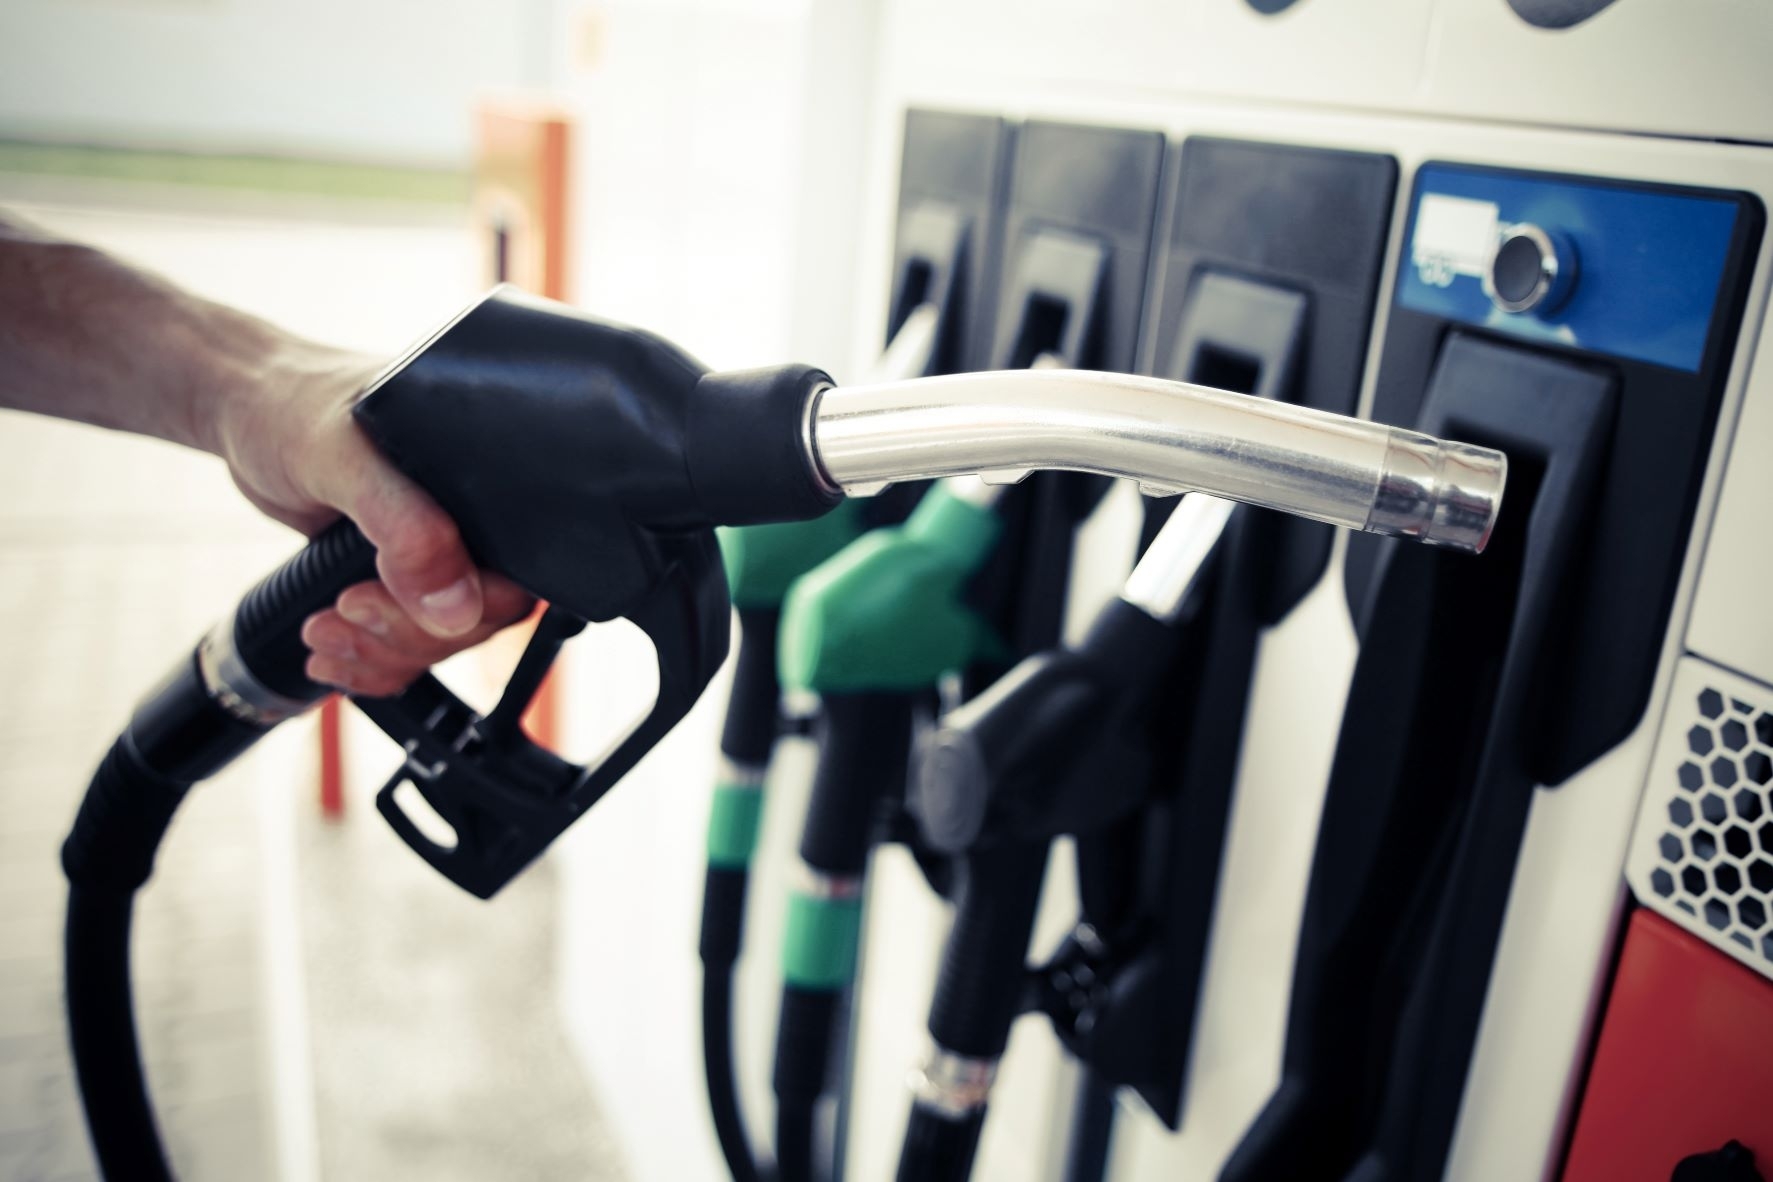 Skirtumas tarp benzino ir dyzelino kainų degalinėse mažėja